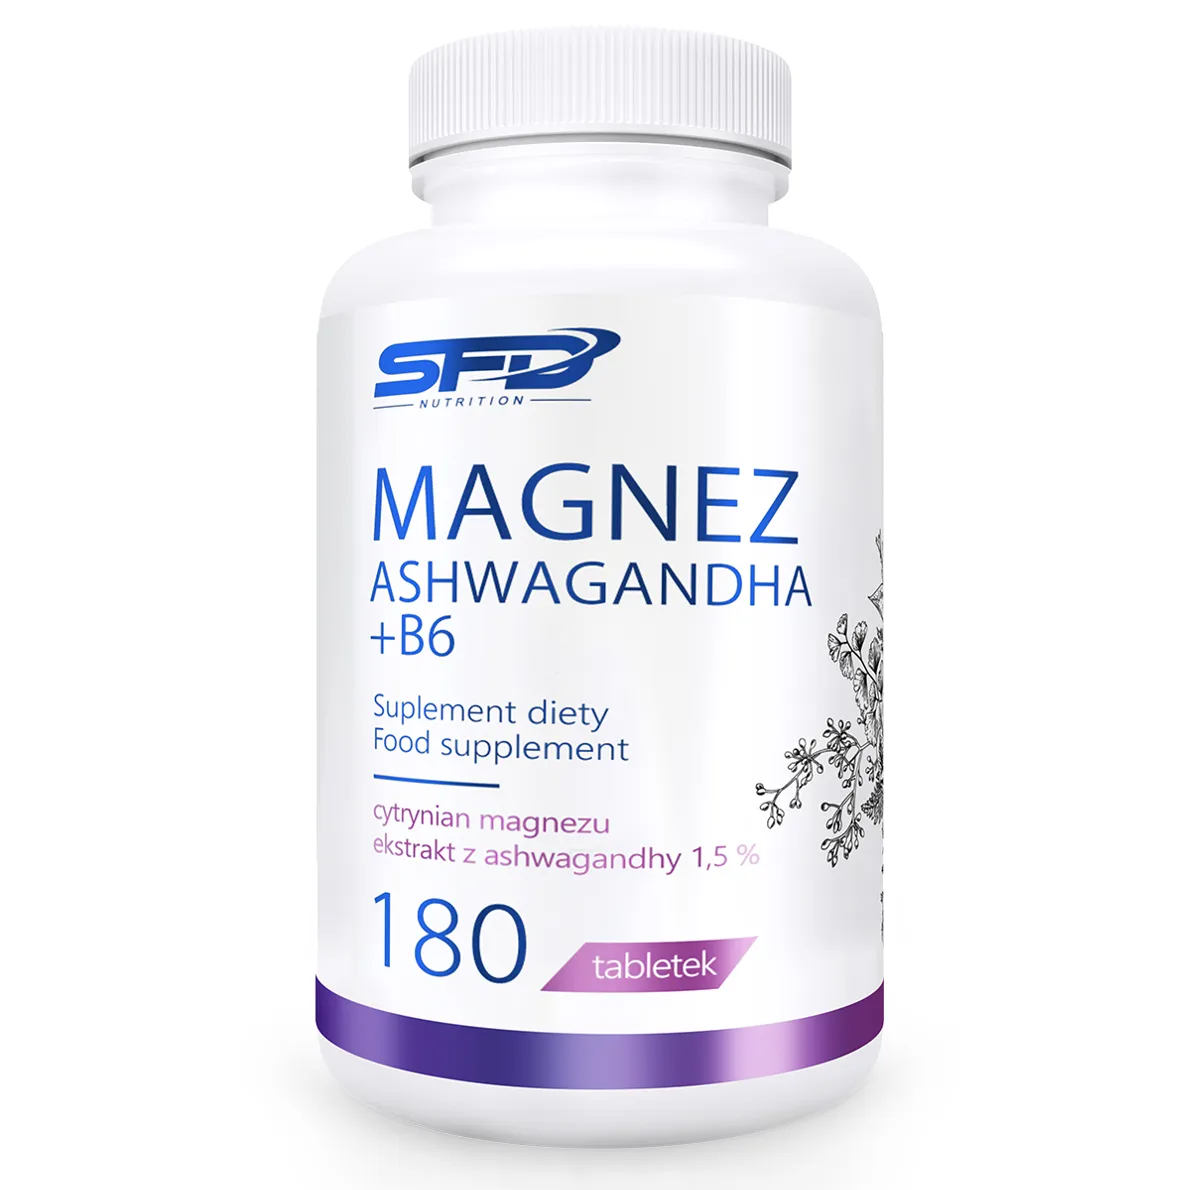 SFD magnez ashwagandha + B6, 180 tabletek